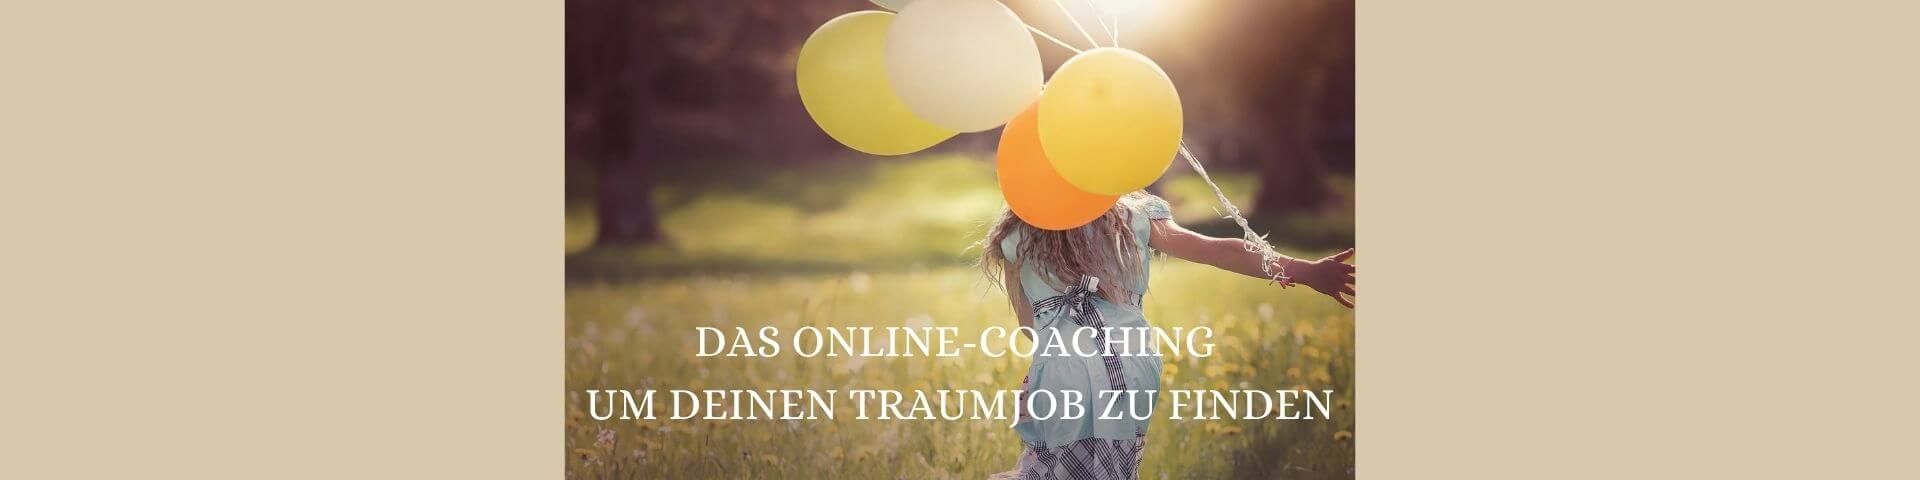 das online-coaching um deinen traumjob zu finden (3)